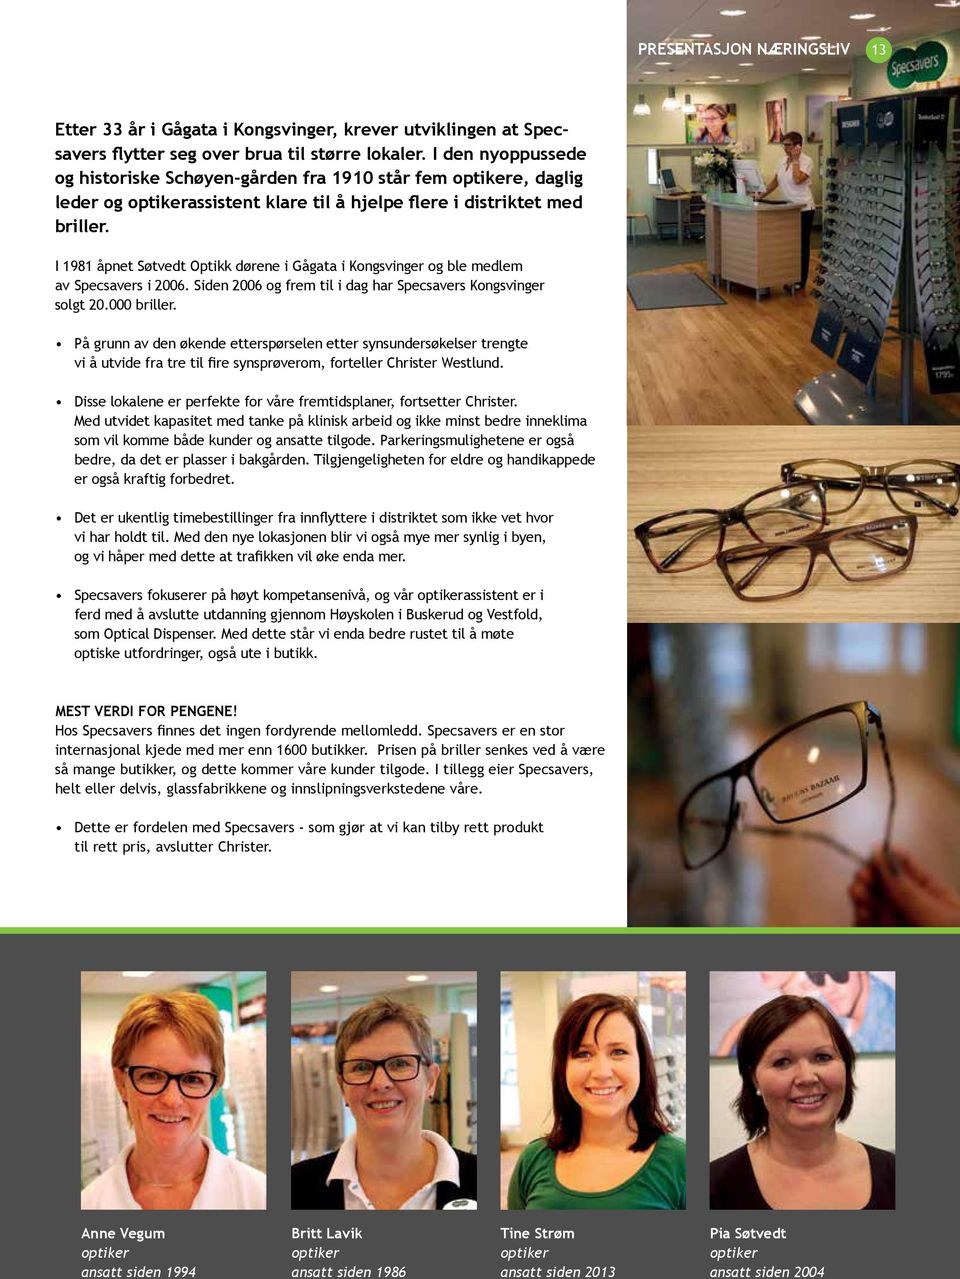 I 1981 åpnet Søtvedt Optikk dørene i Gågata i Kongsvinger og ble medlem av Specsavers i 2006. Siden 2006 og frem til i dag har Specsavers Kongsvinger solgt 20.000 briller.